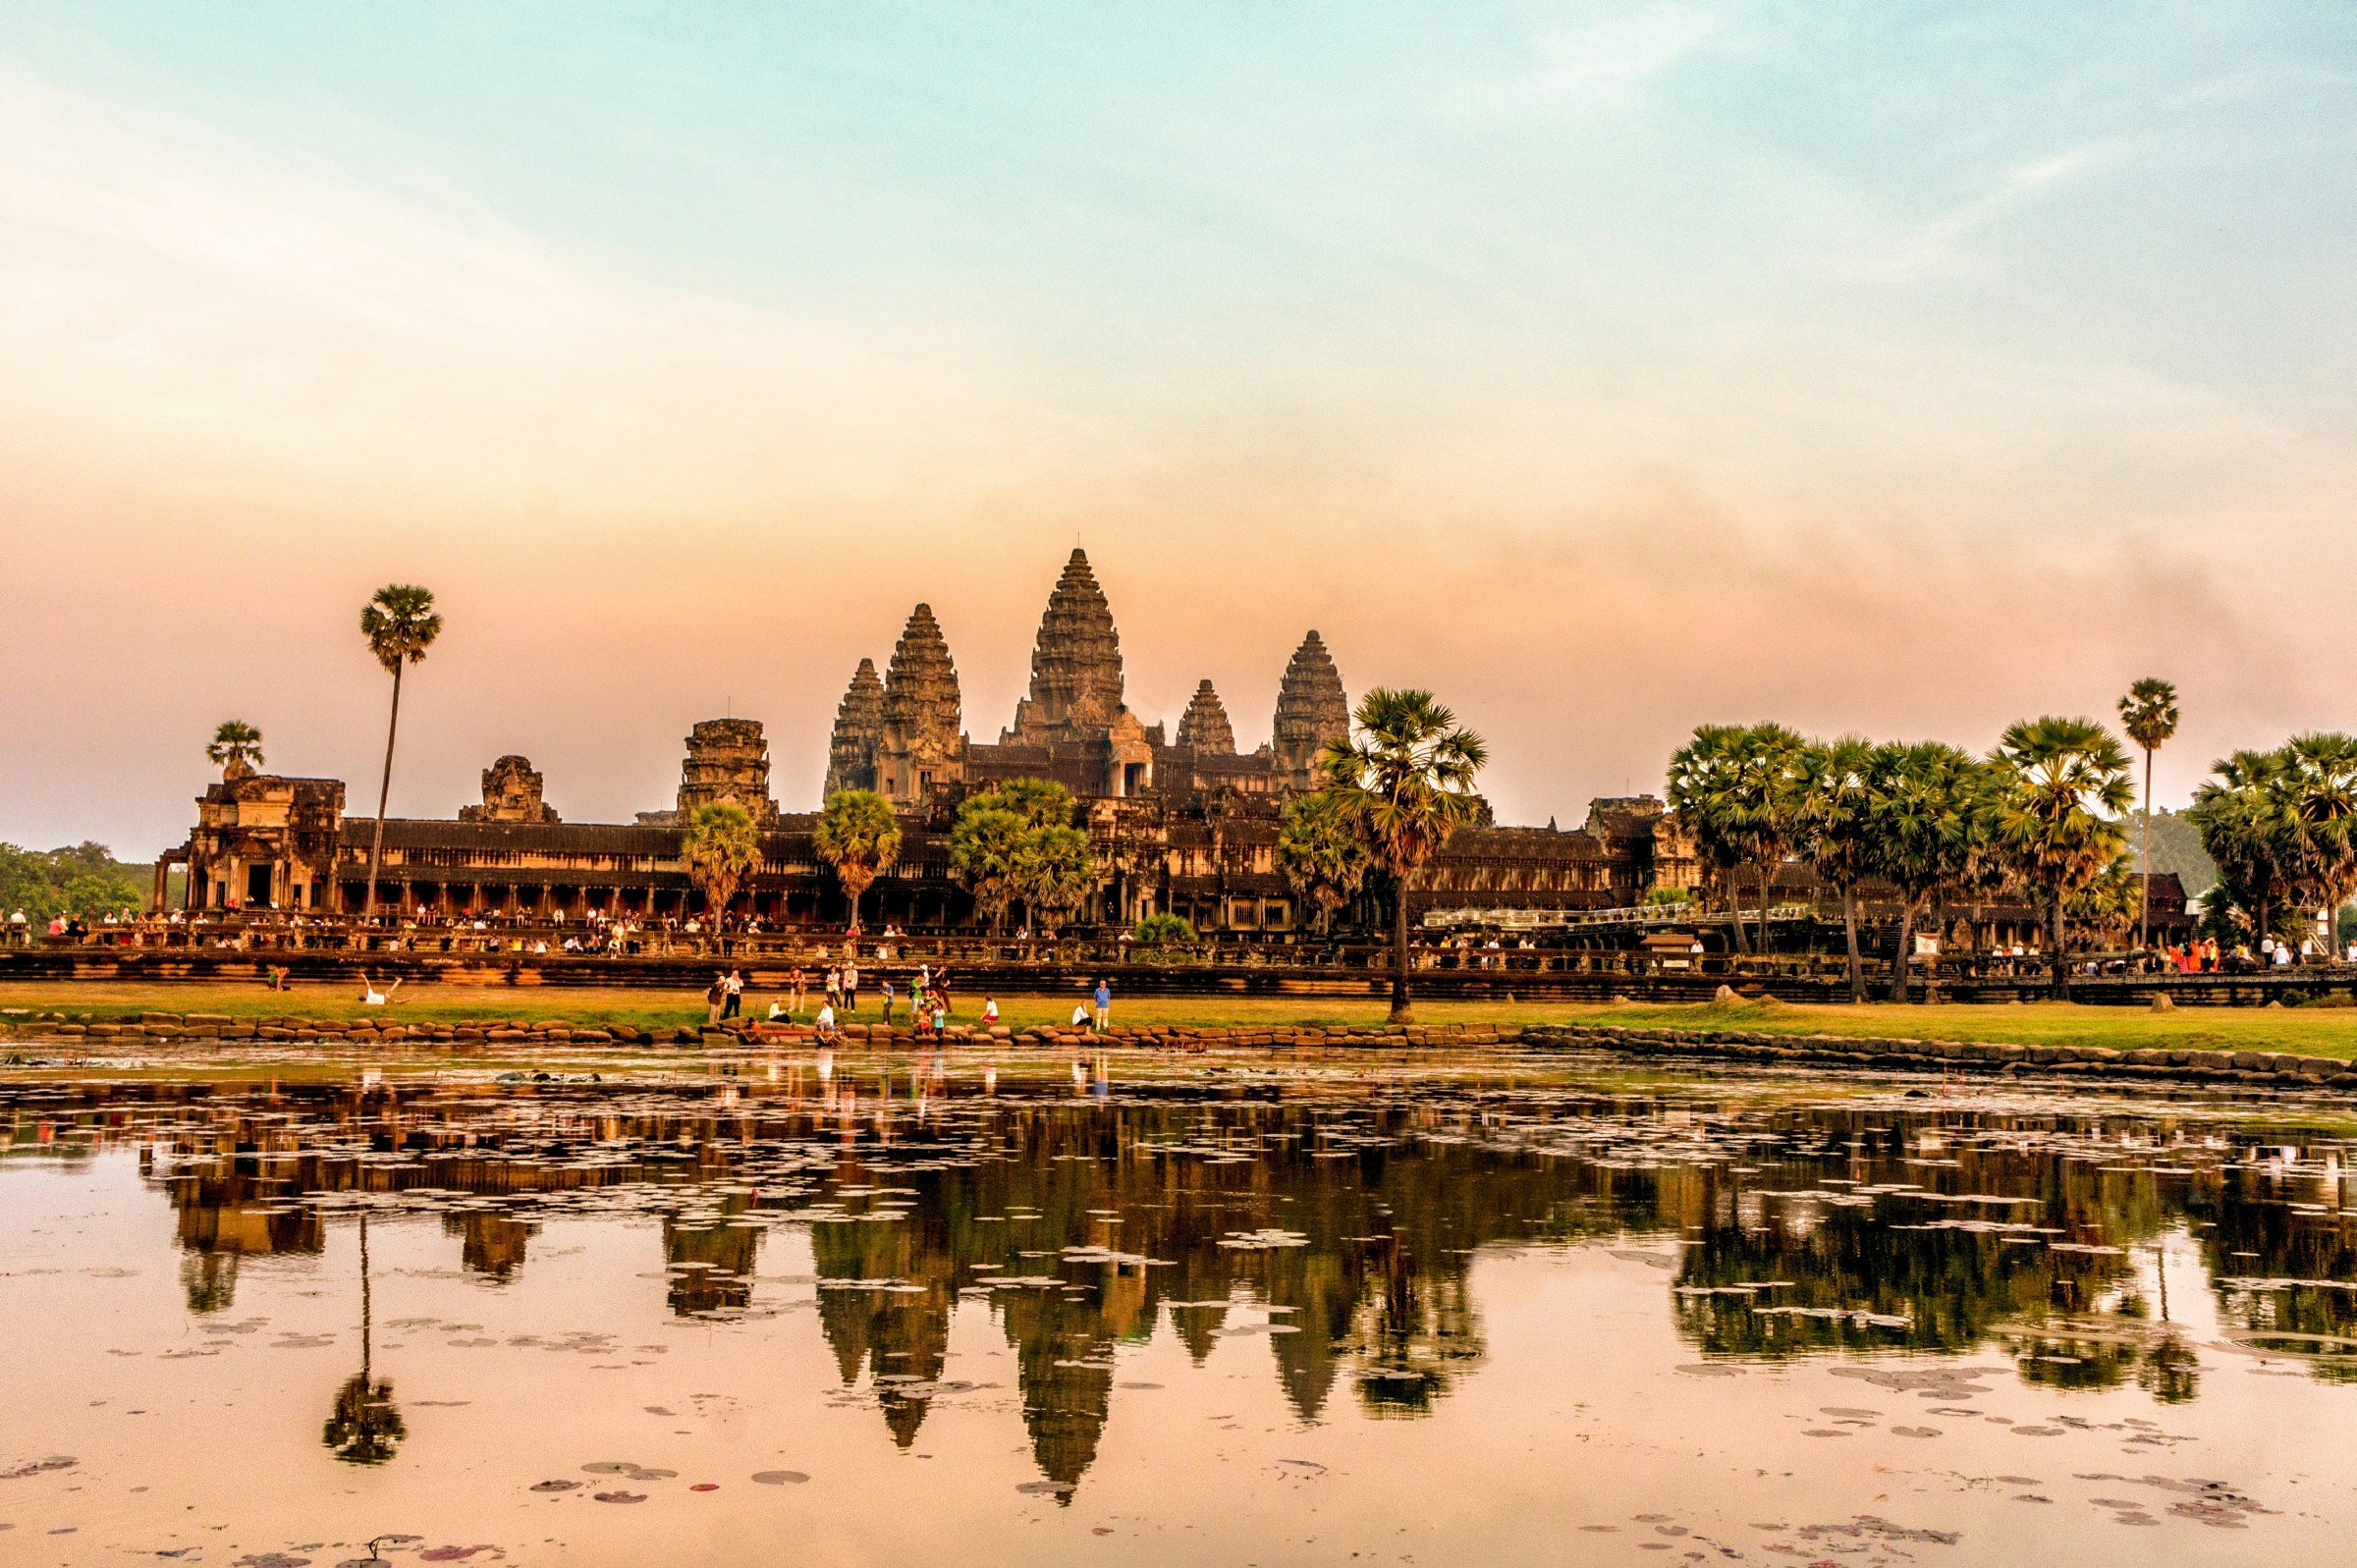 Angkor Wat reflected in water at sunset.jpg